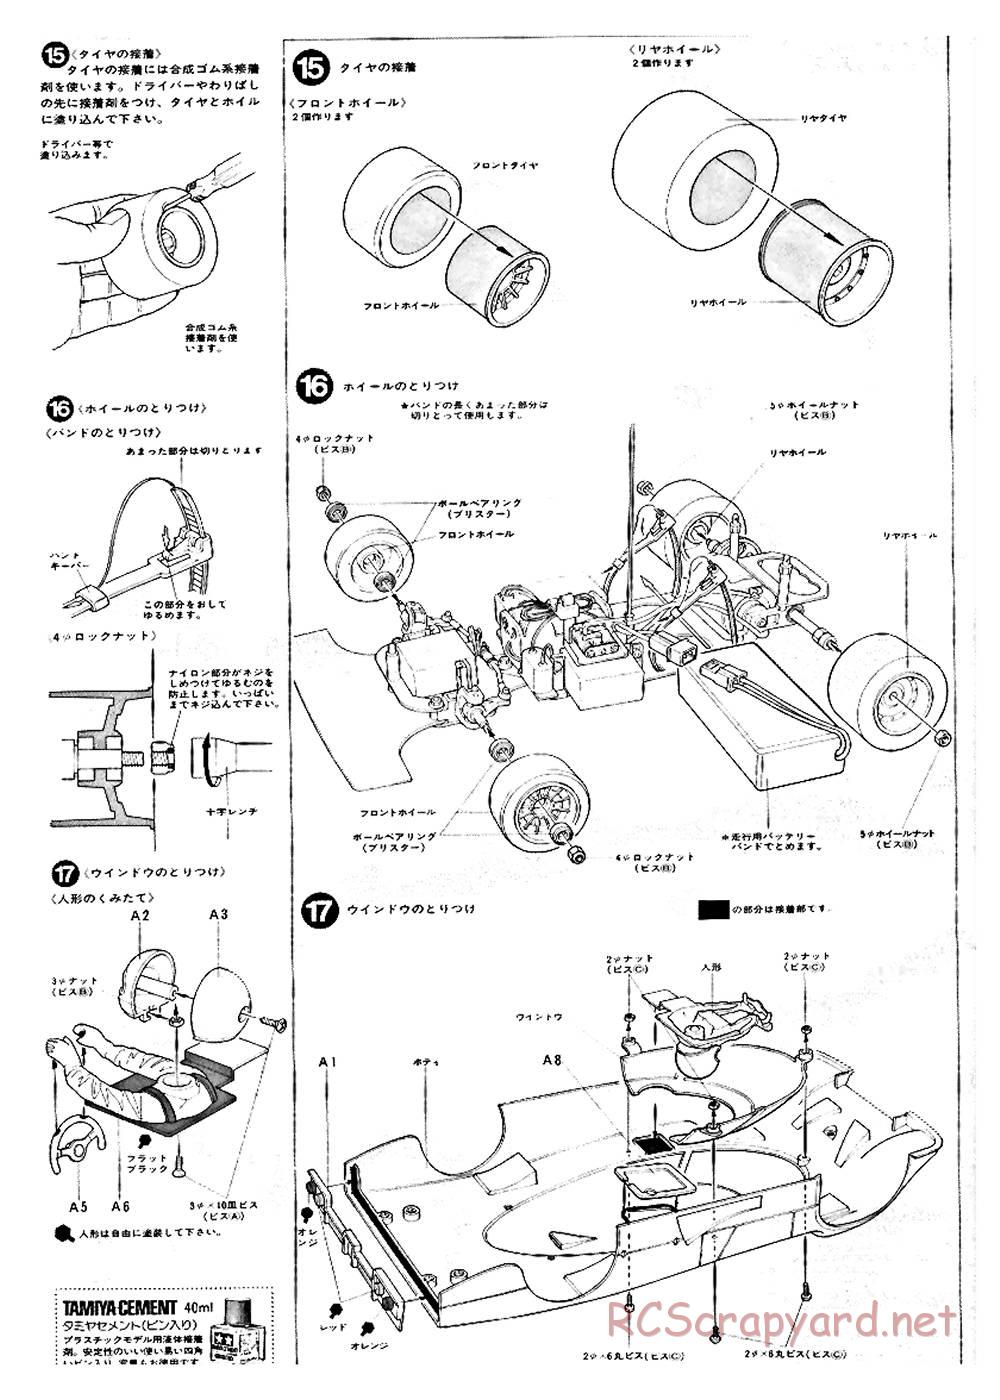 Tamiya - Ford C100 - RM MK.4 - 58033 - Manual - Page 8